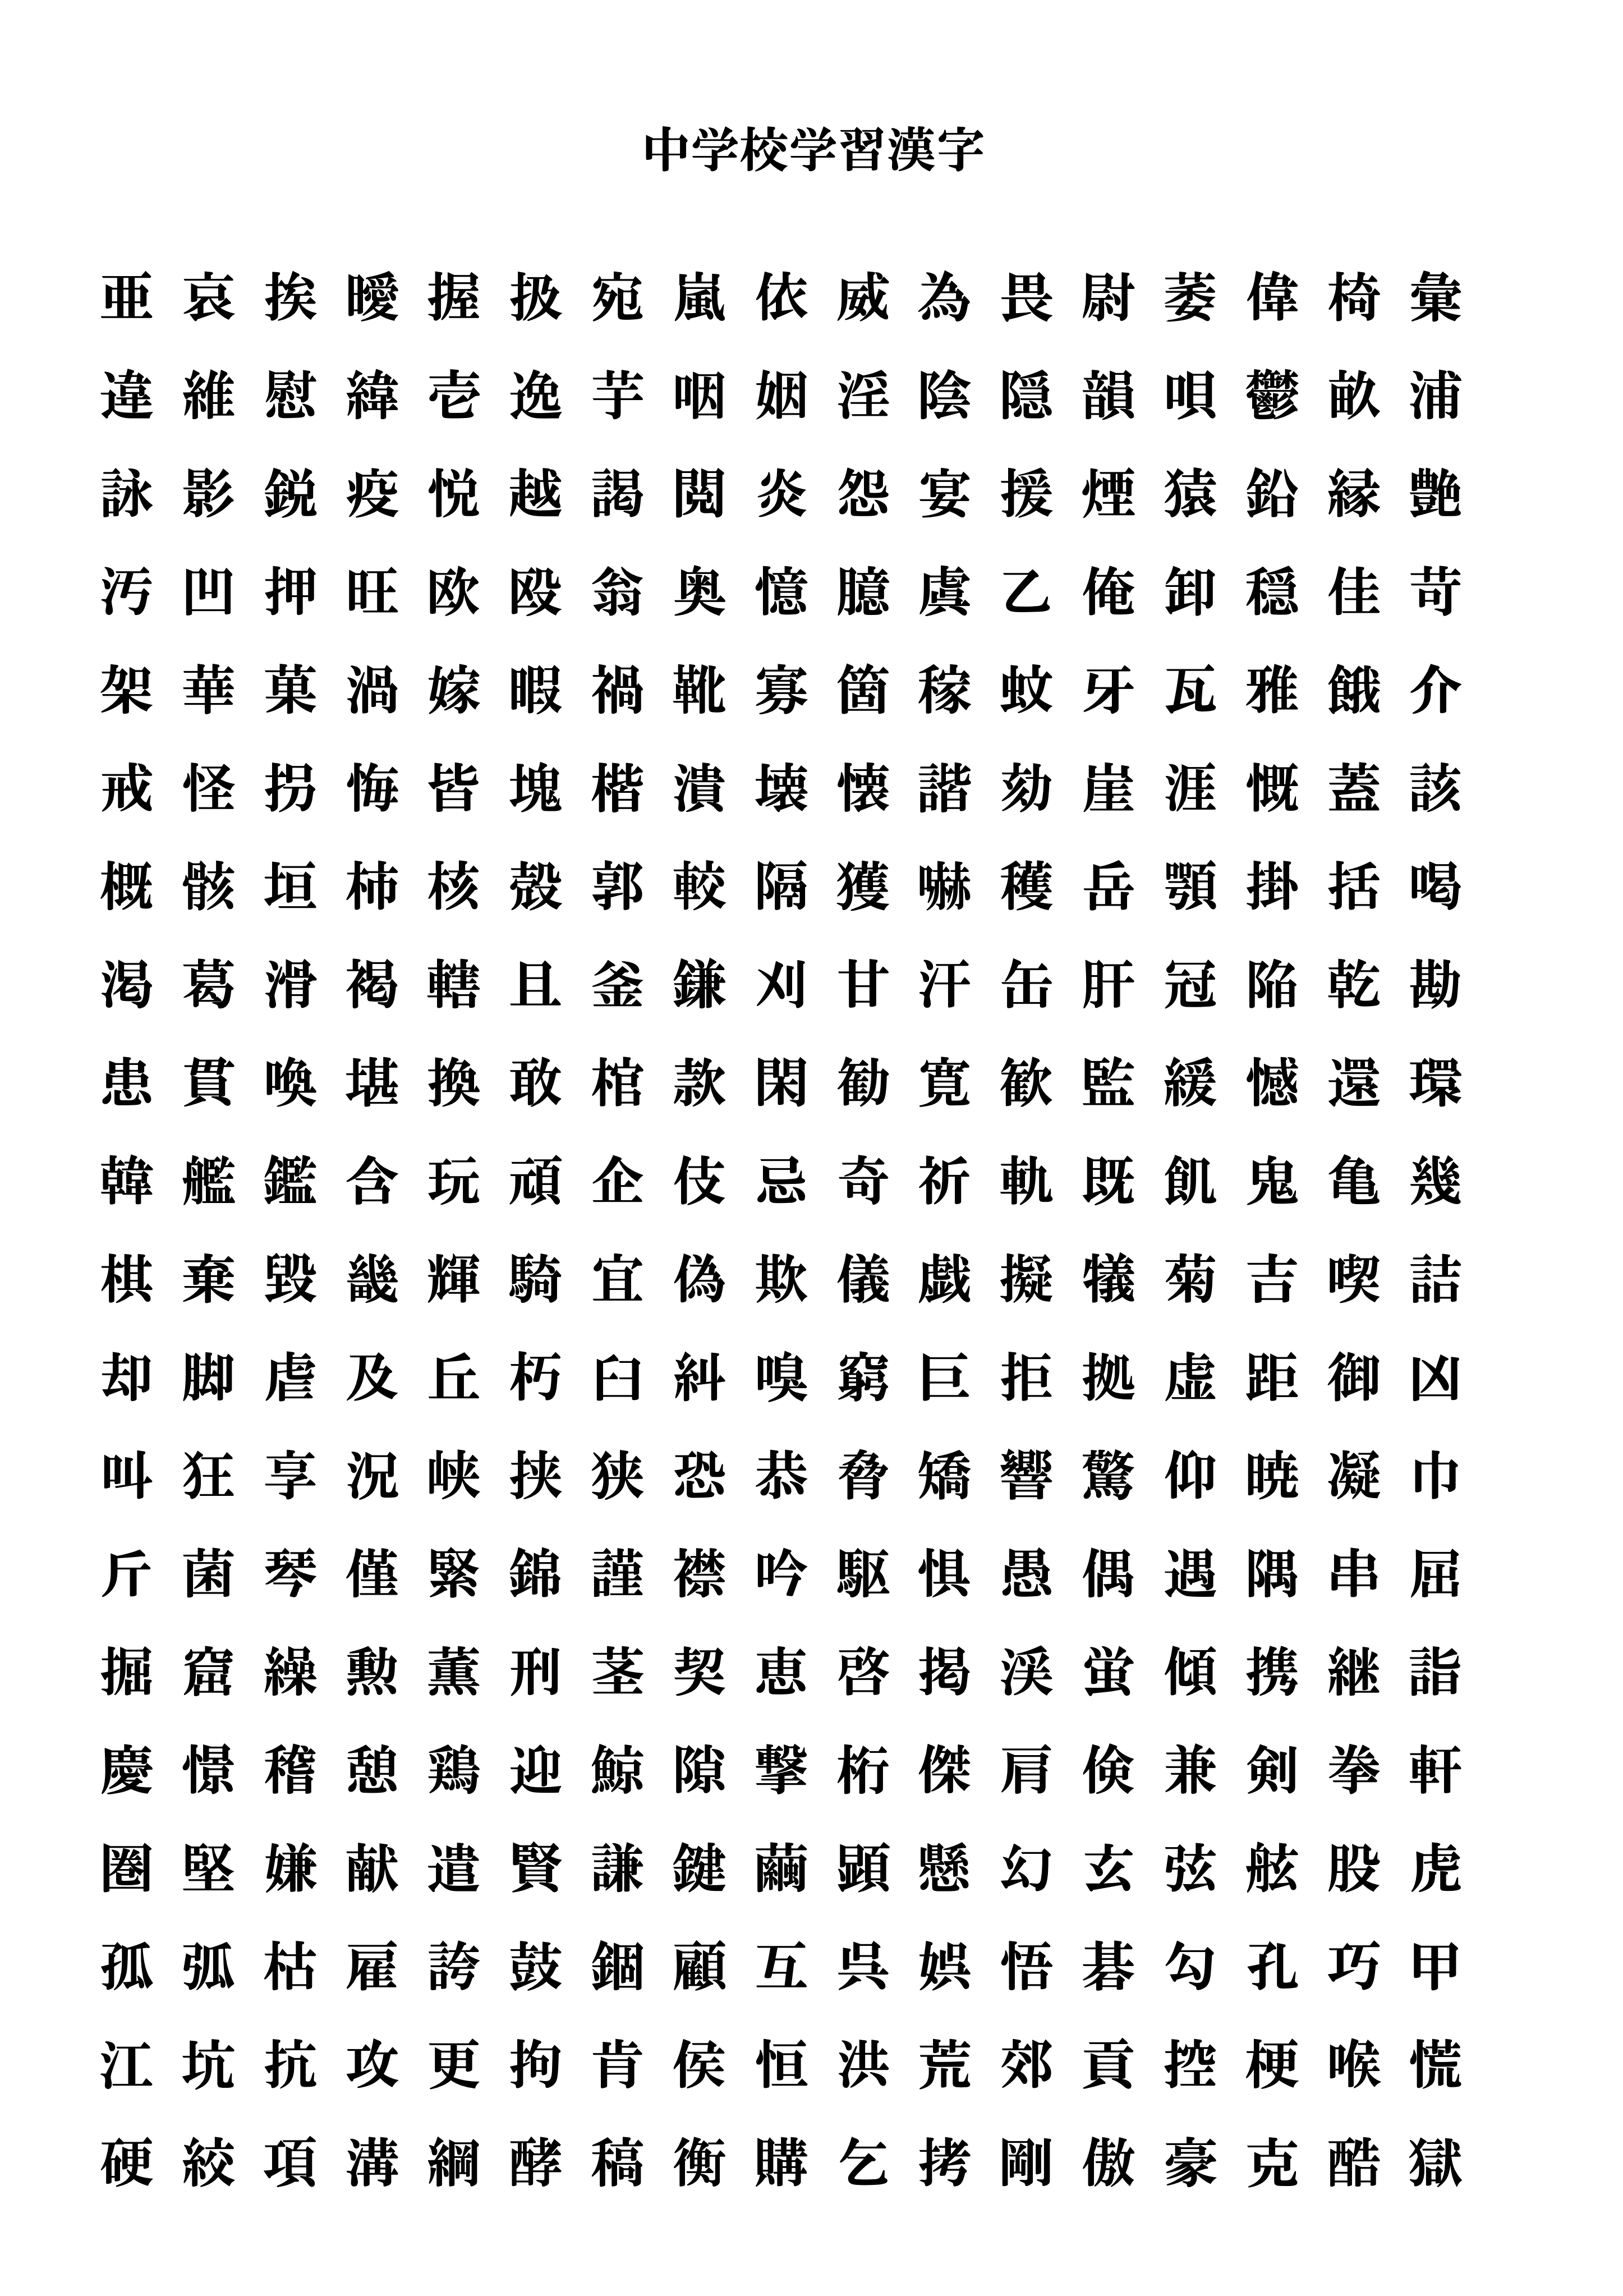 中 二 で 習う 漢字